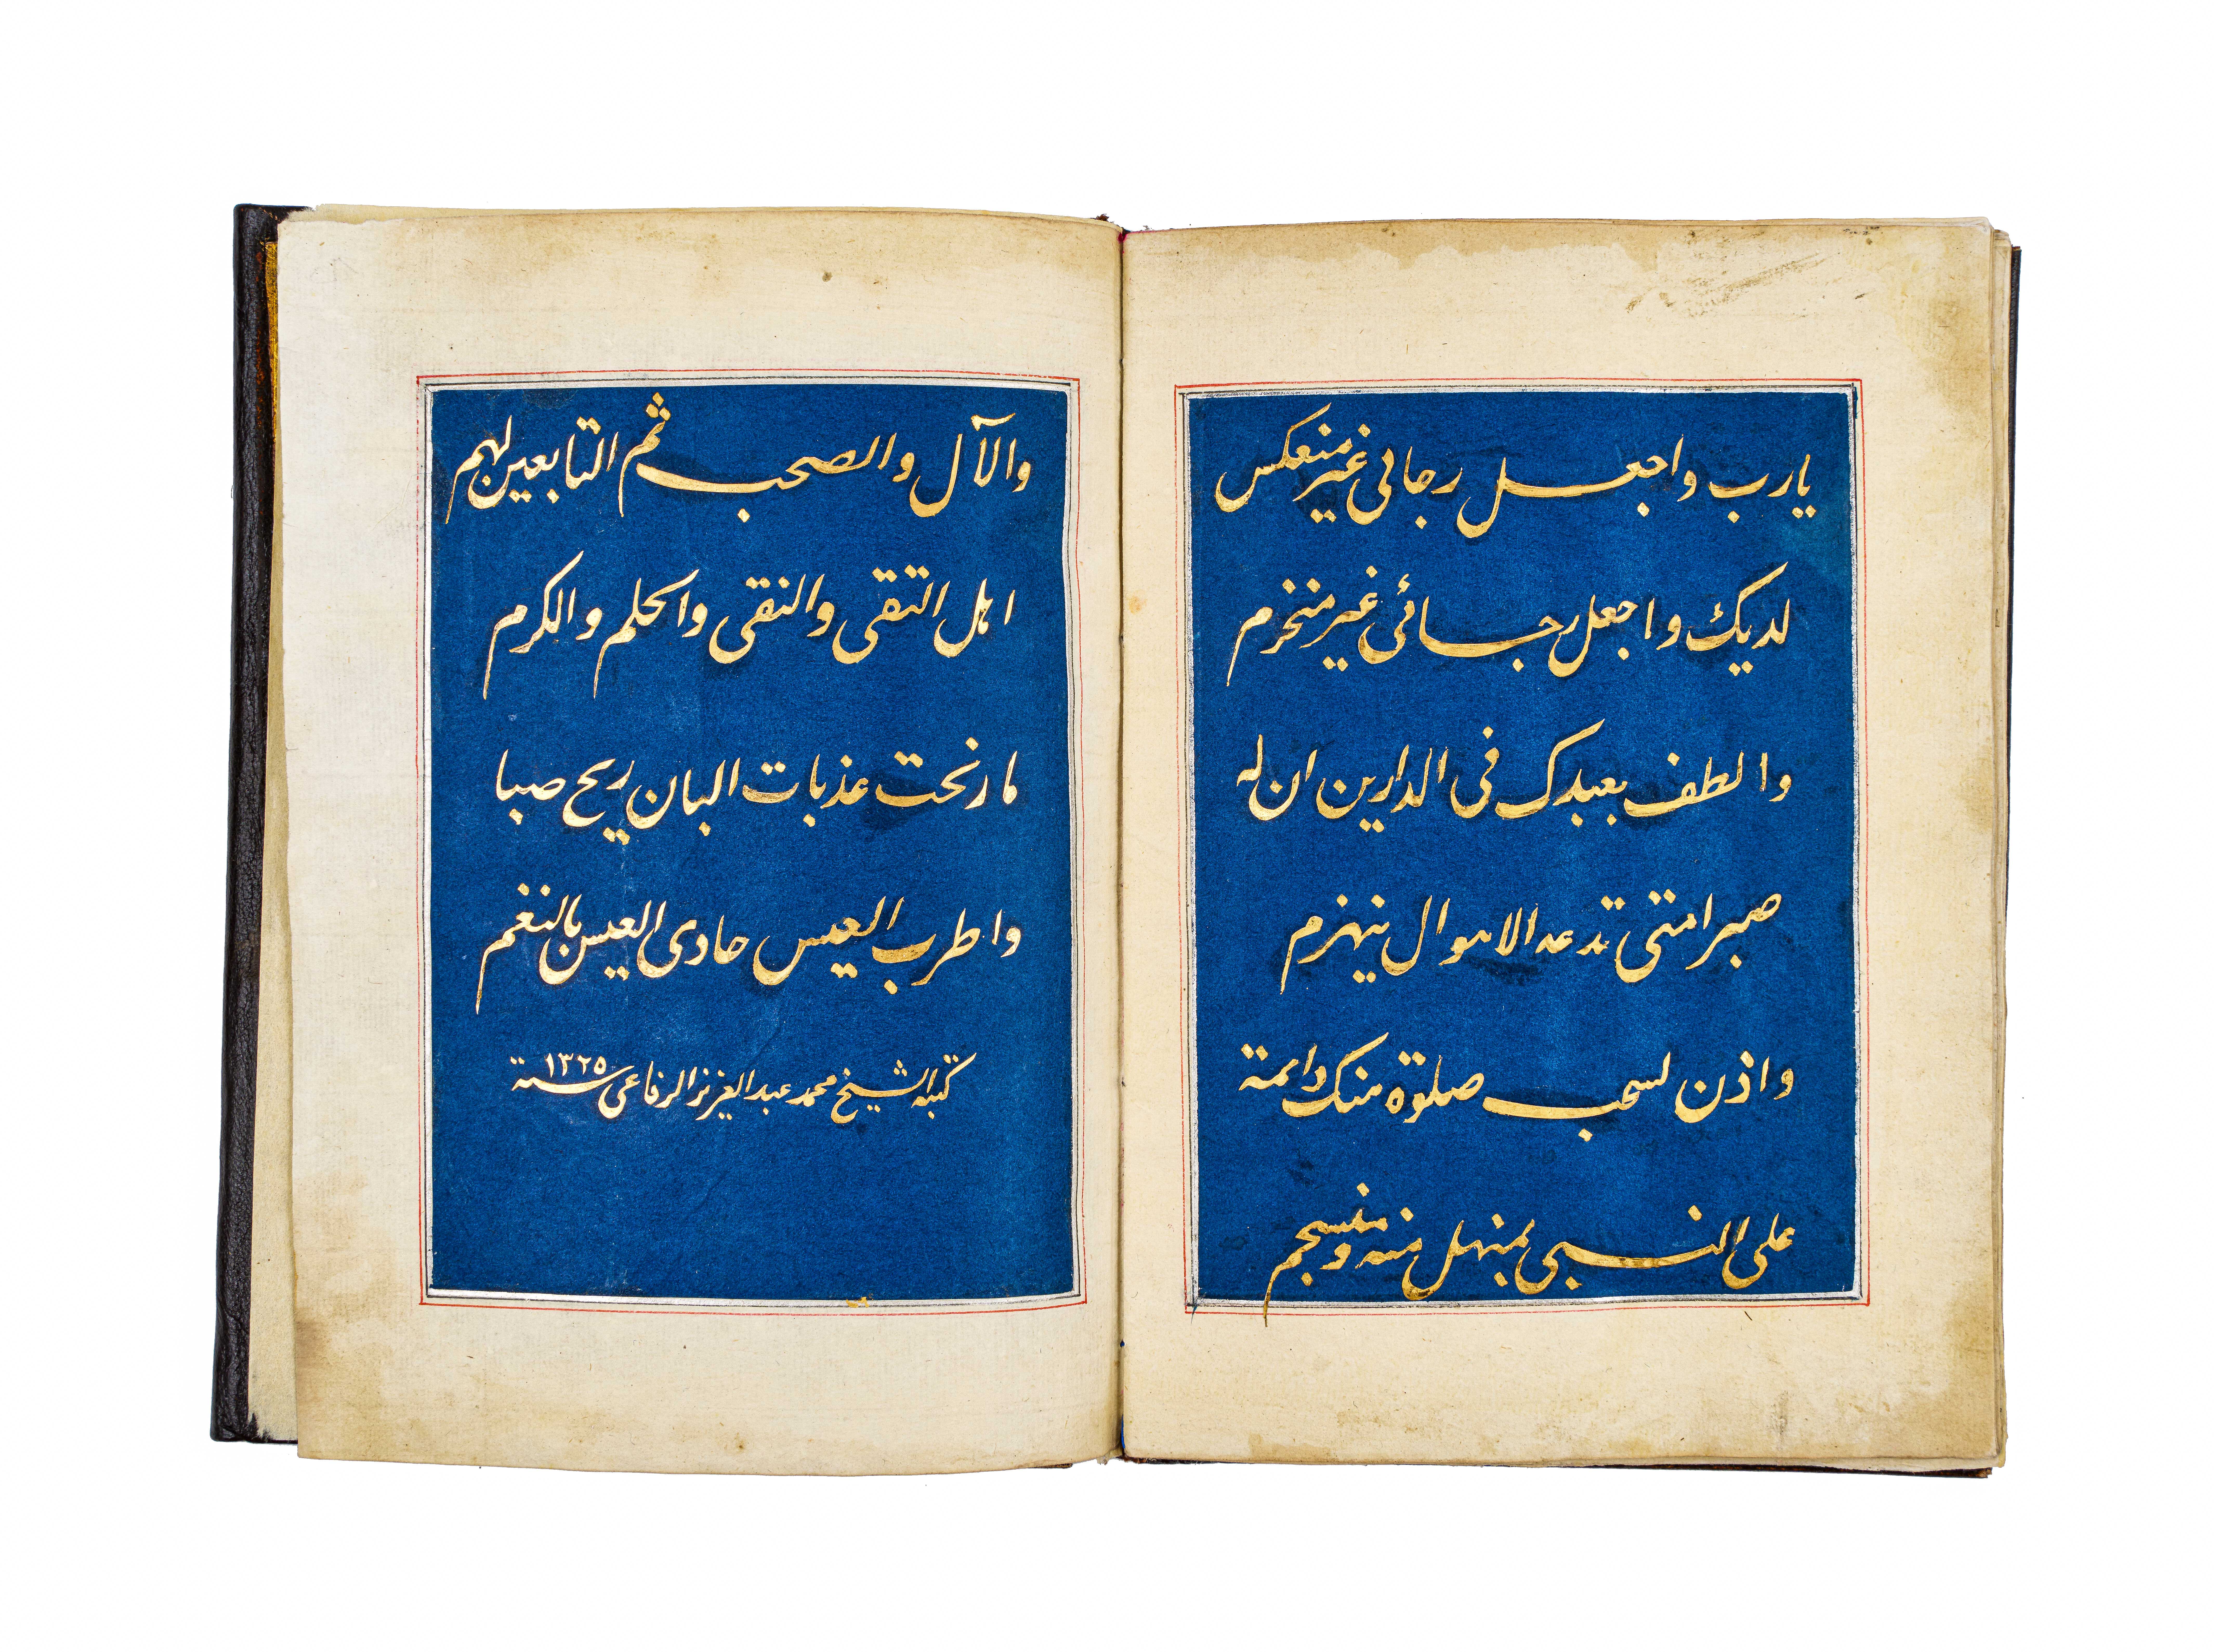 A POEM (AL-BURDAH) WRITTEN BY SHEIKH MUHAMMAD ABDUL AZIZ AL-RIFAI, DATED 1325AH, ON BLUE PAPER - Image 4 of 5